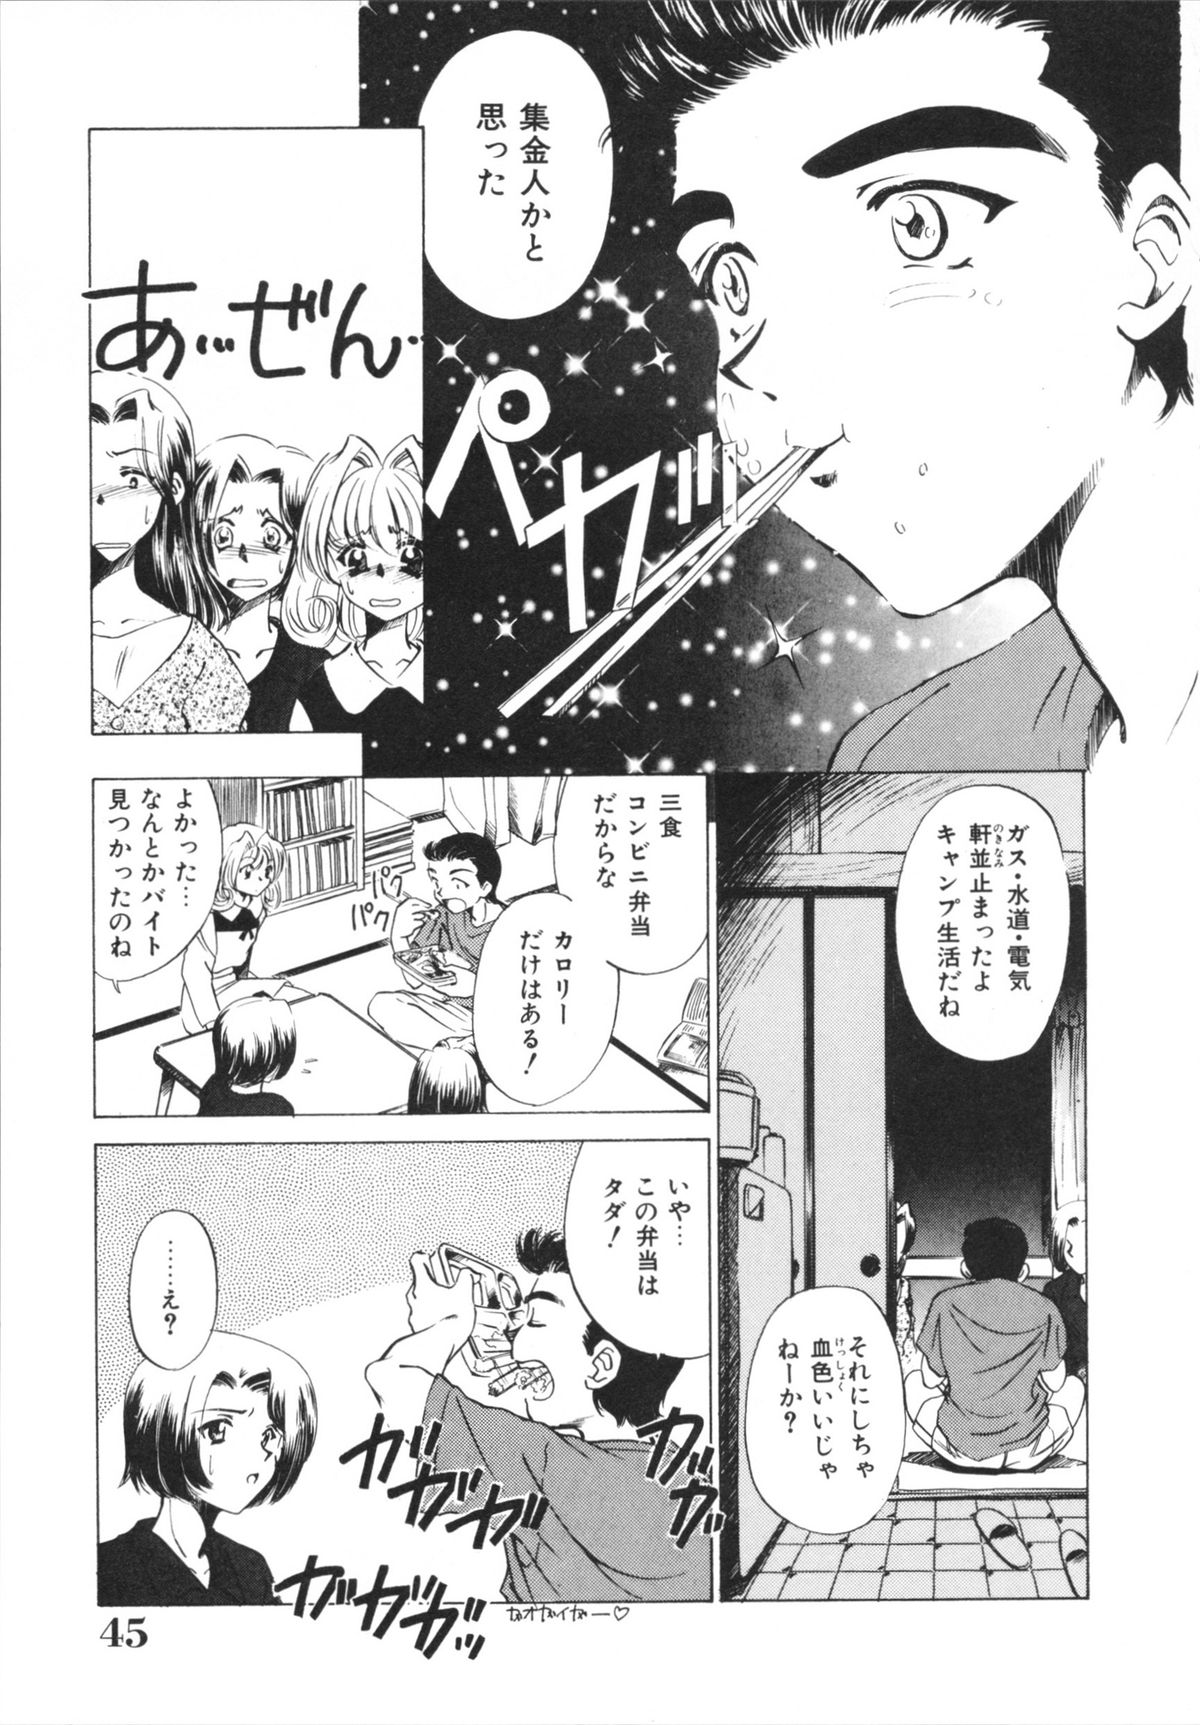 [Sada Ko-ji] H Shichau zo! page 47 full